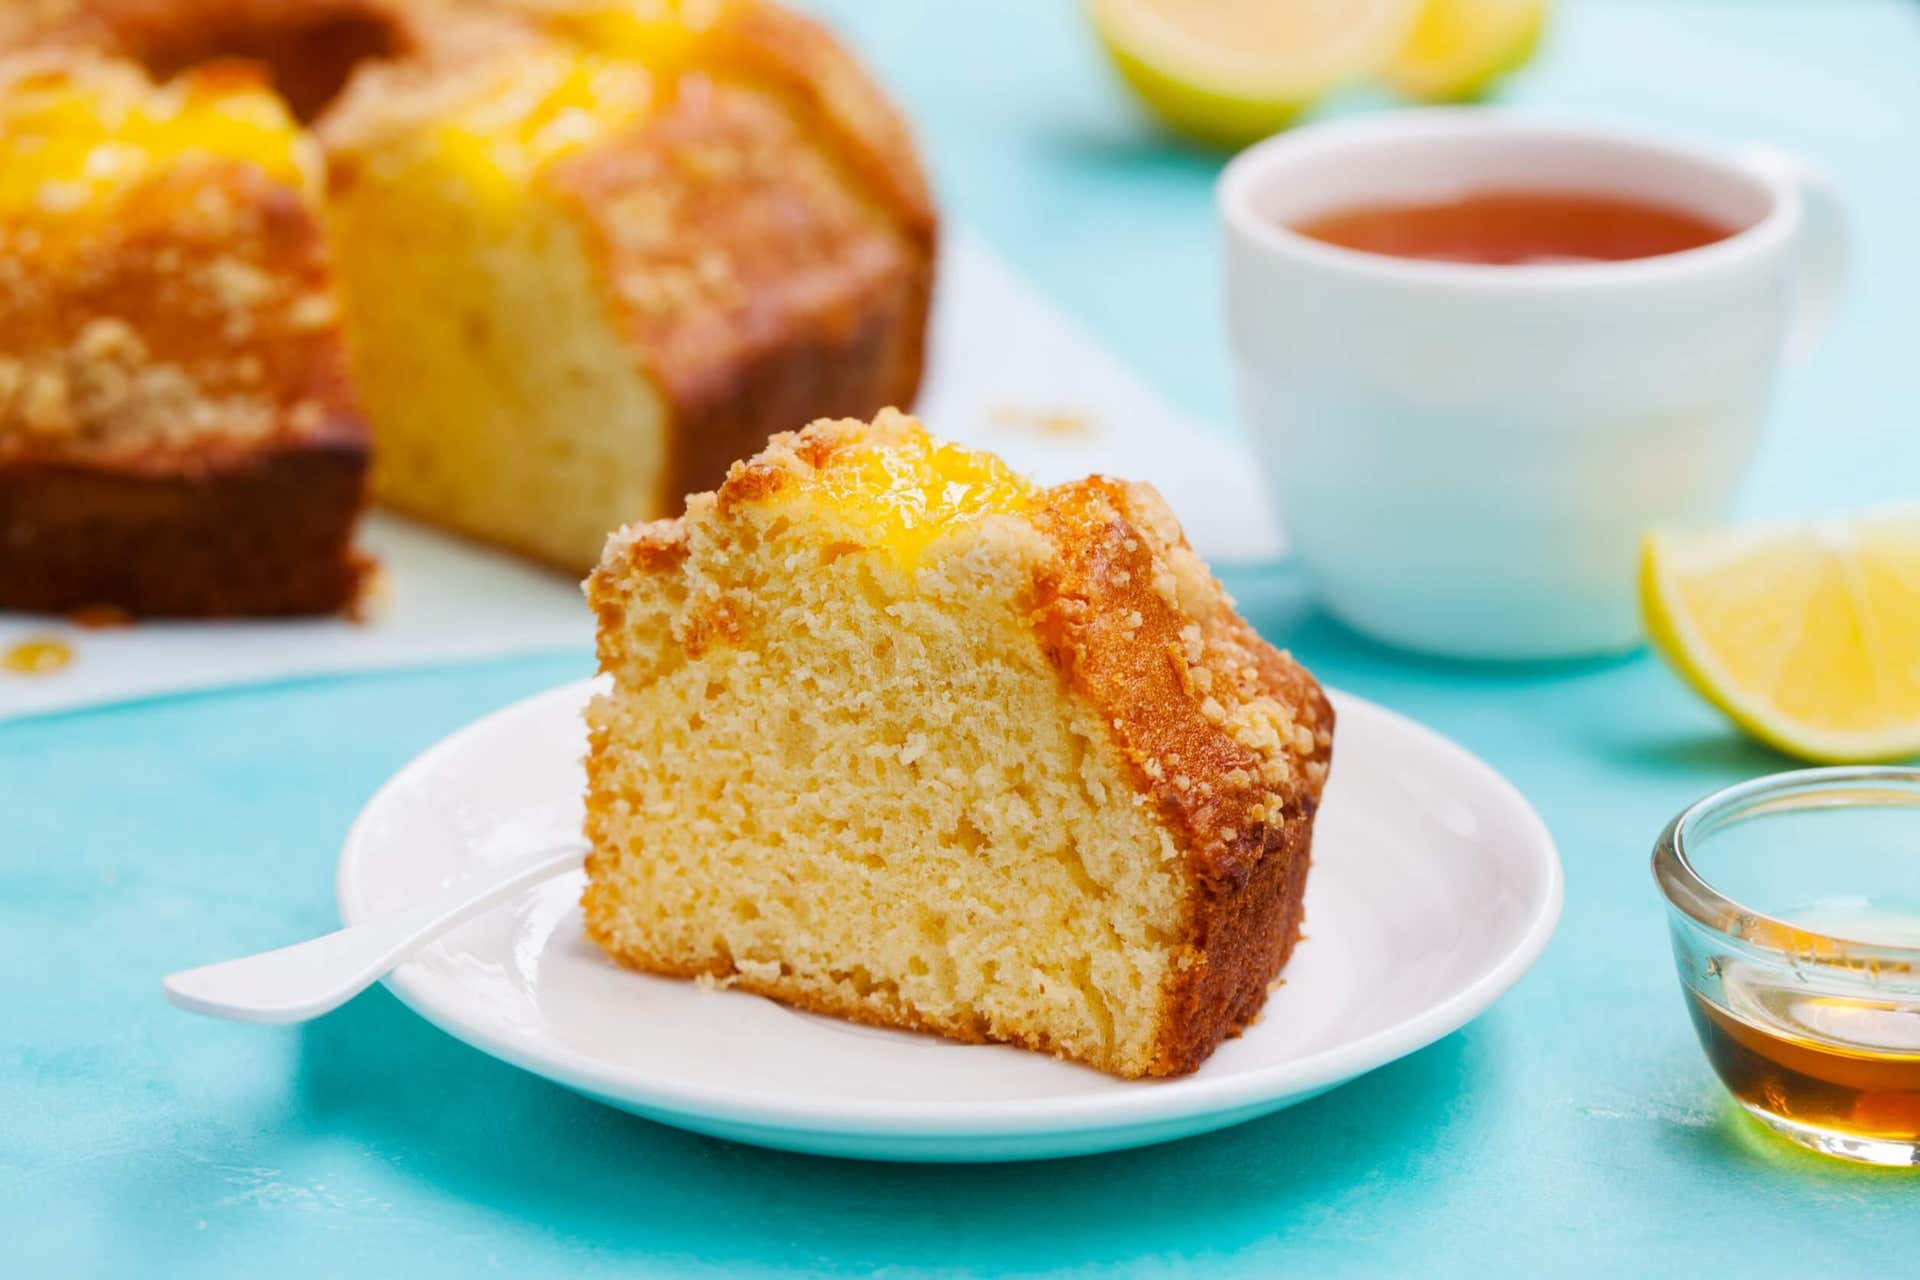 La receta del pastel de limón sin gluten es fácil de hacer